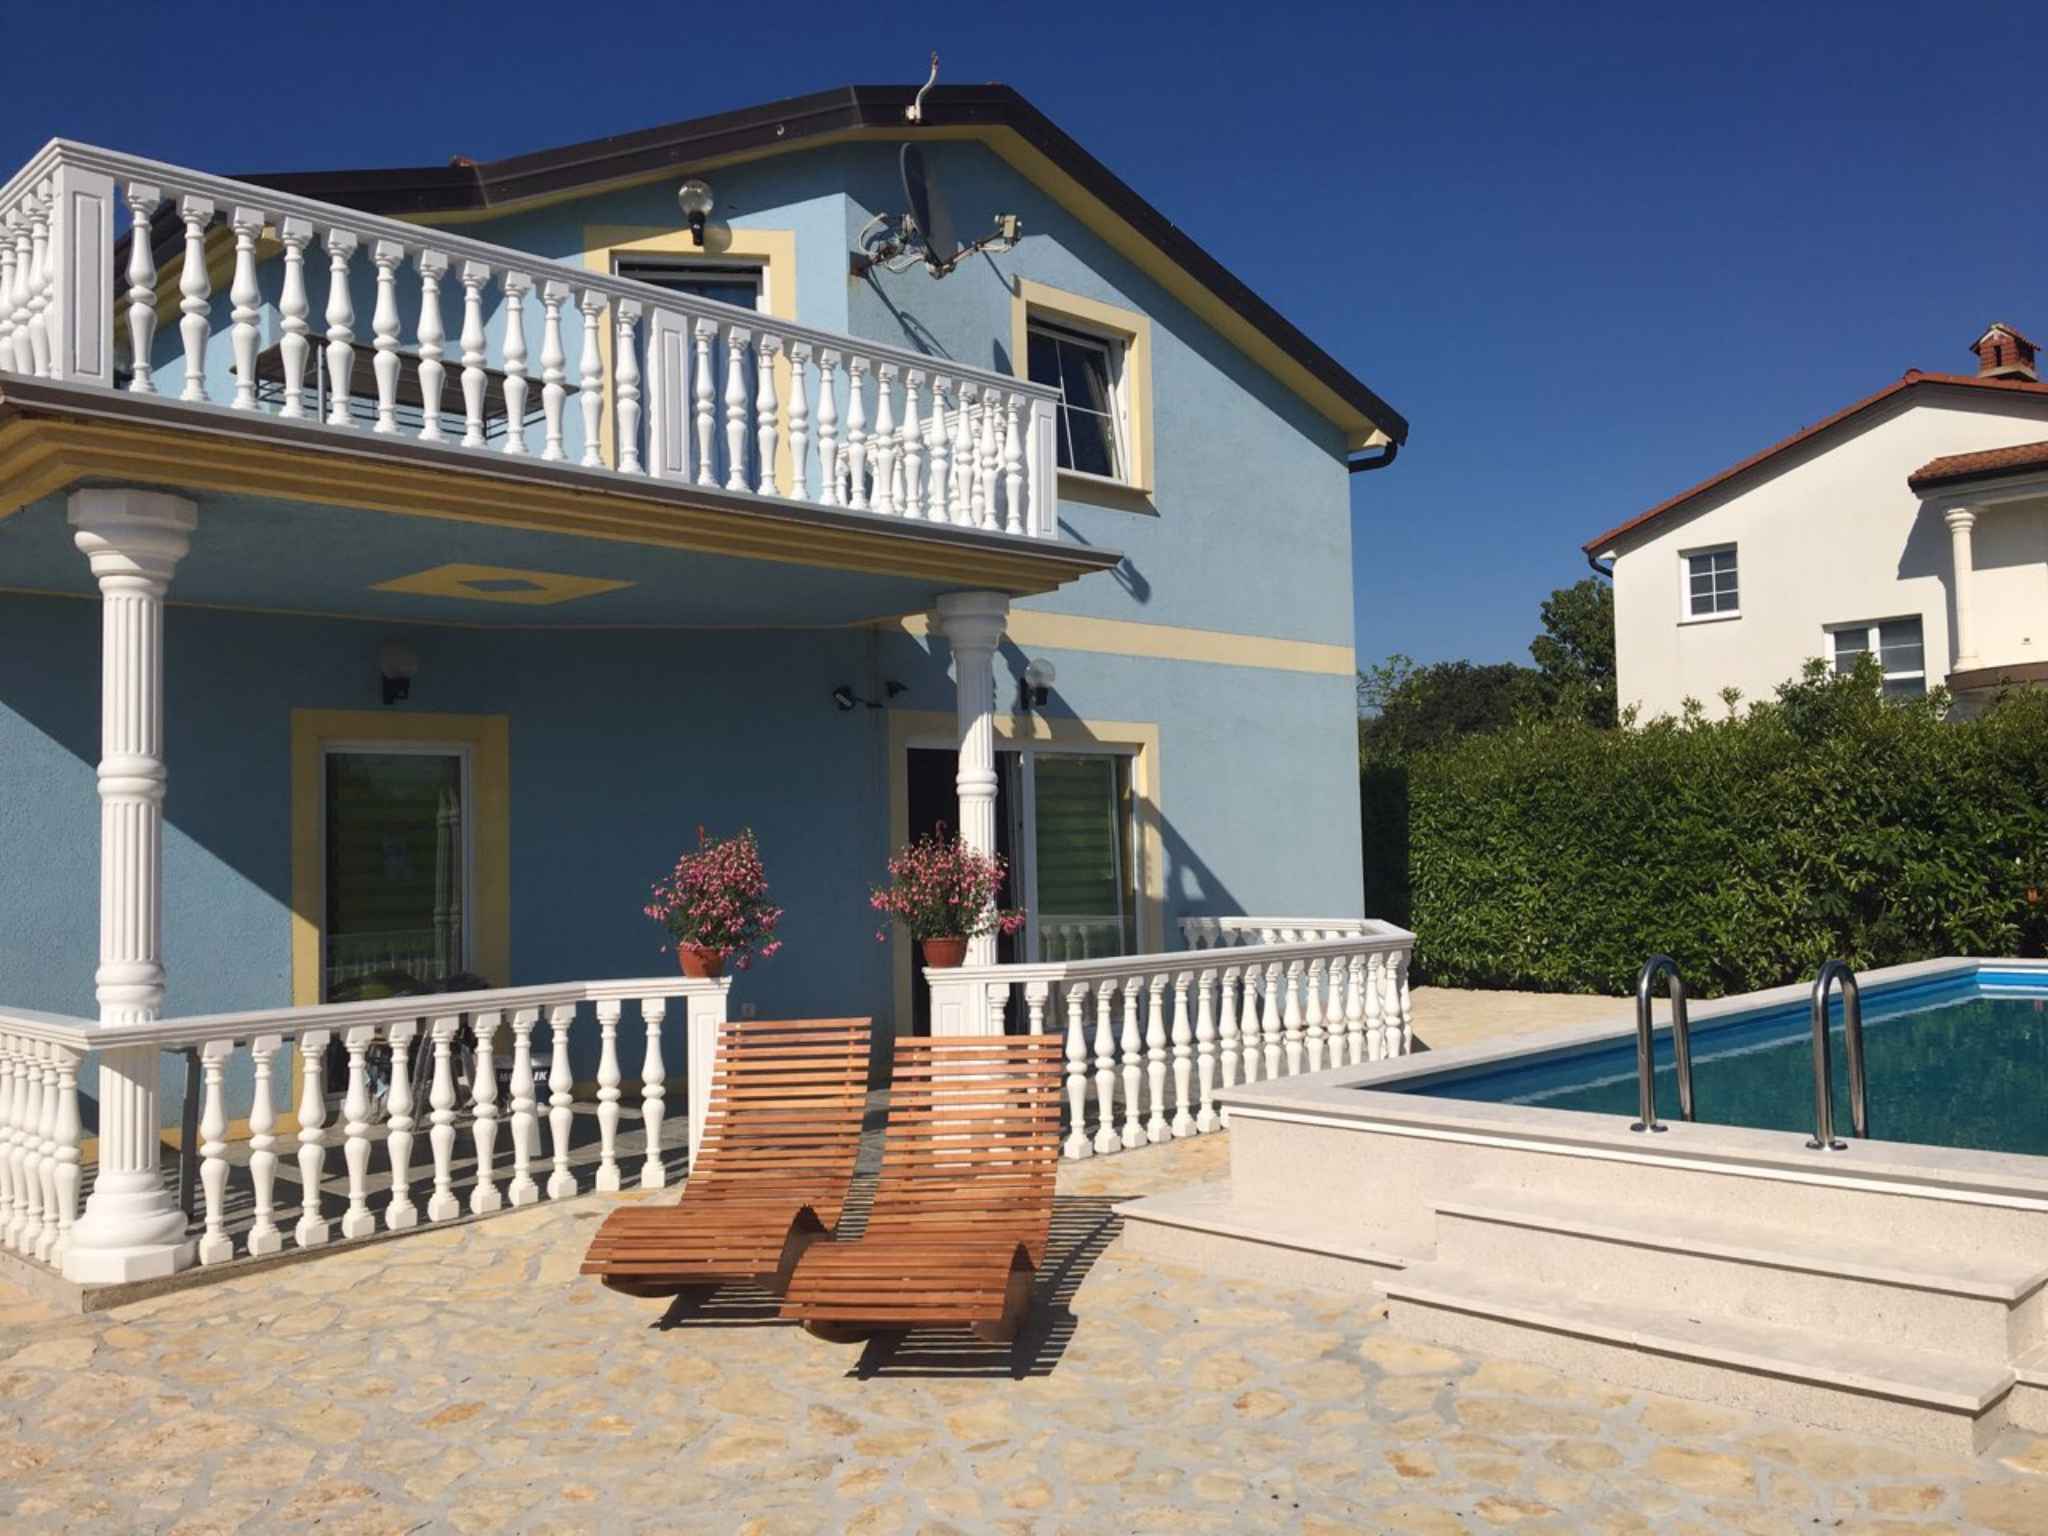 Ferienhaus mit Pool und Grill Ferienhaus in Istrien